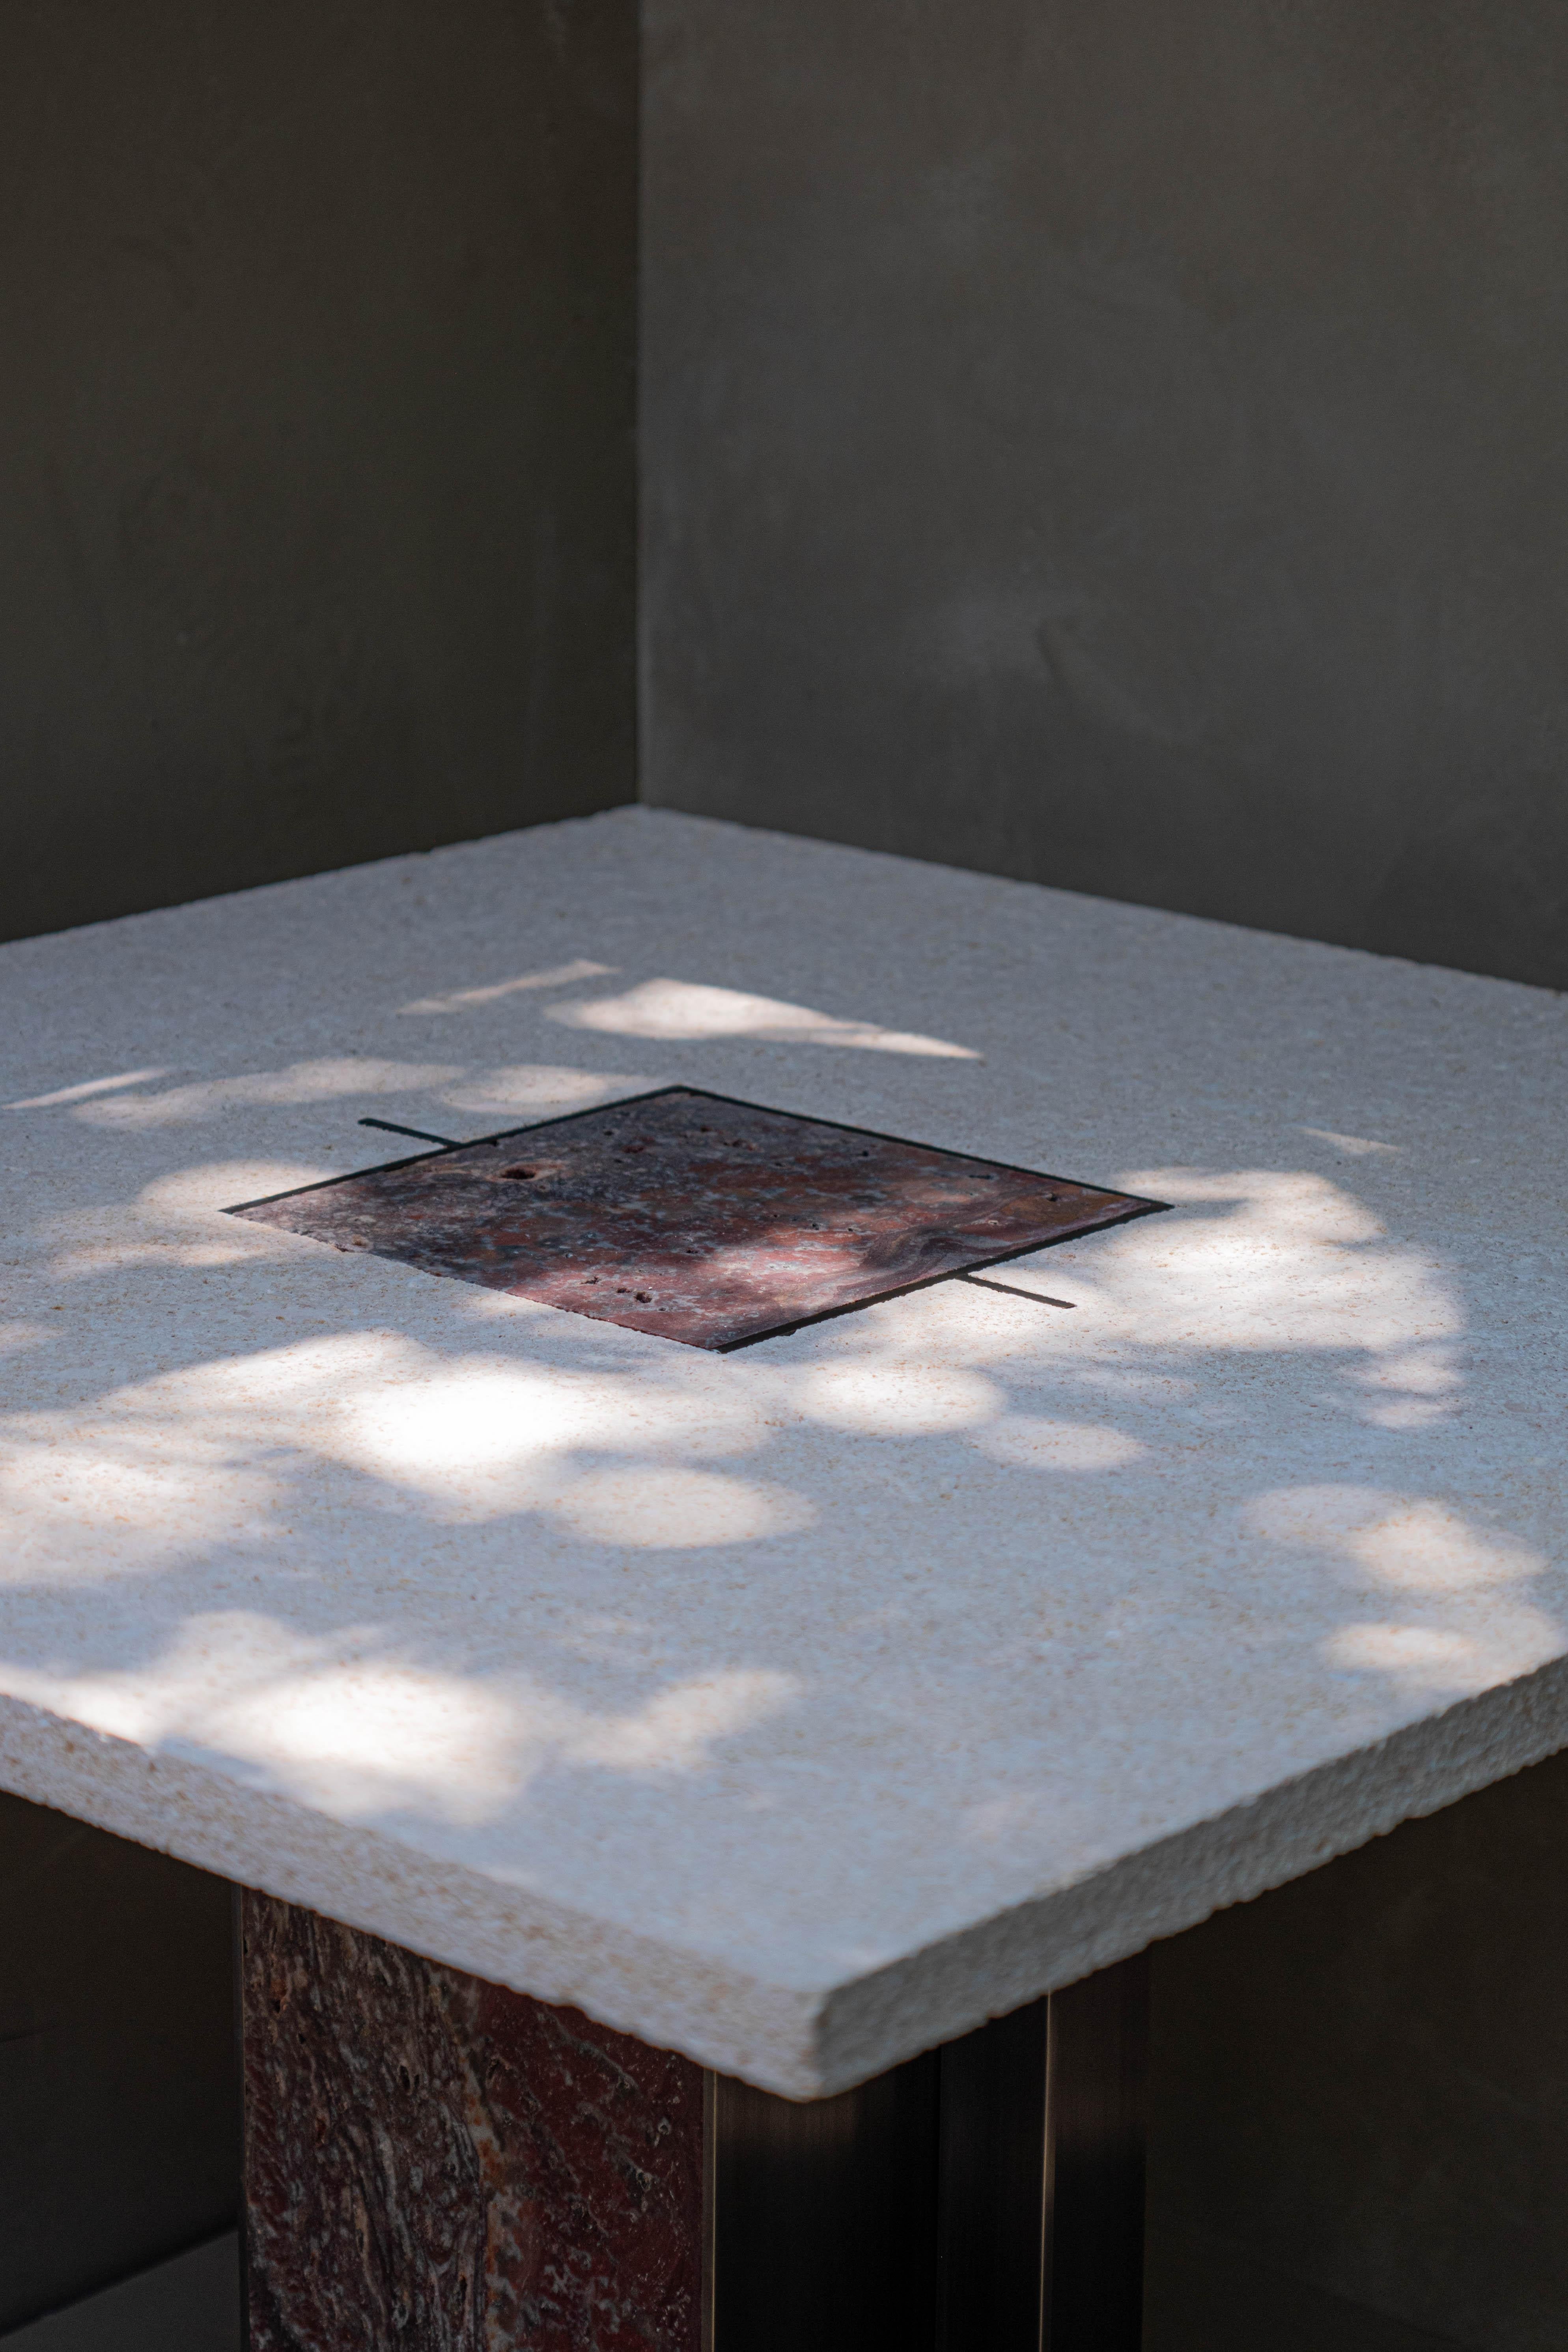 39,4 B x 39,4 T x 28,3 H in
DERZEIT AUF LAGER

Luar Table liefert eine visuelle Interpretation des Sonnenaufgangs, eines der heiligsten Rituale der Natur. Präzise Farben und saubere Formen rufen ein vergessenes Symbol hervor. Gleichzeitig sorgt ein